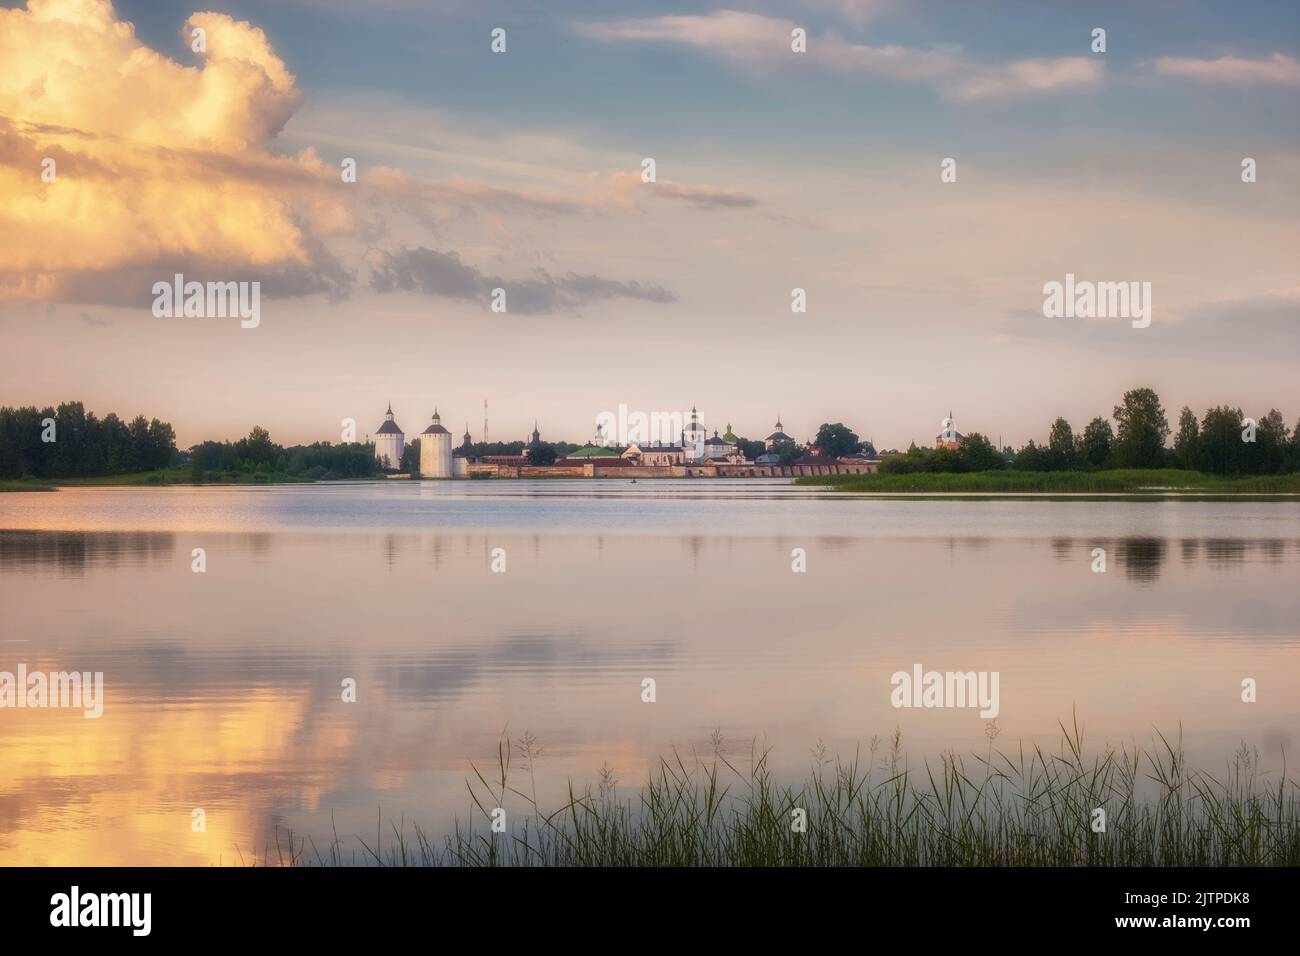 Das Kloster Kirillo Belozersky in der Region Wologda liegt am Ufer des Sees Siversky Stockfoto